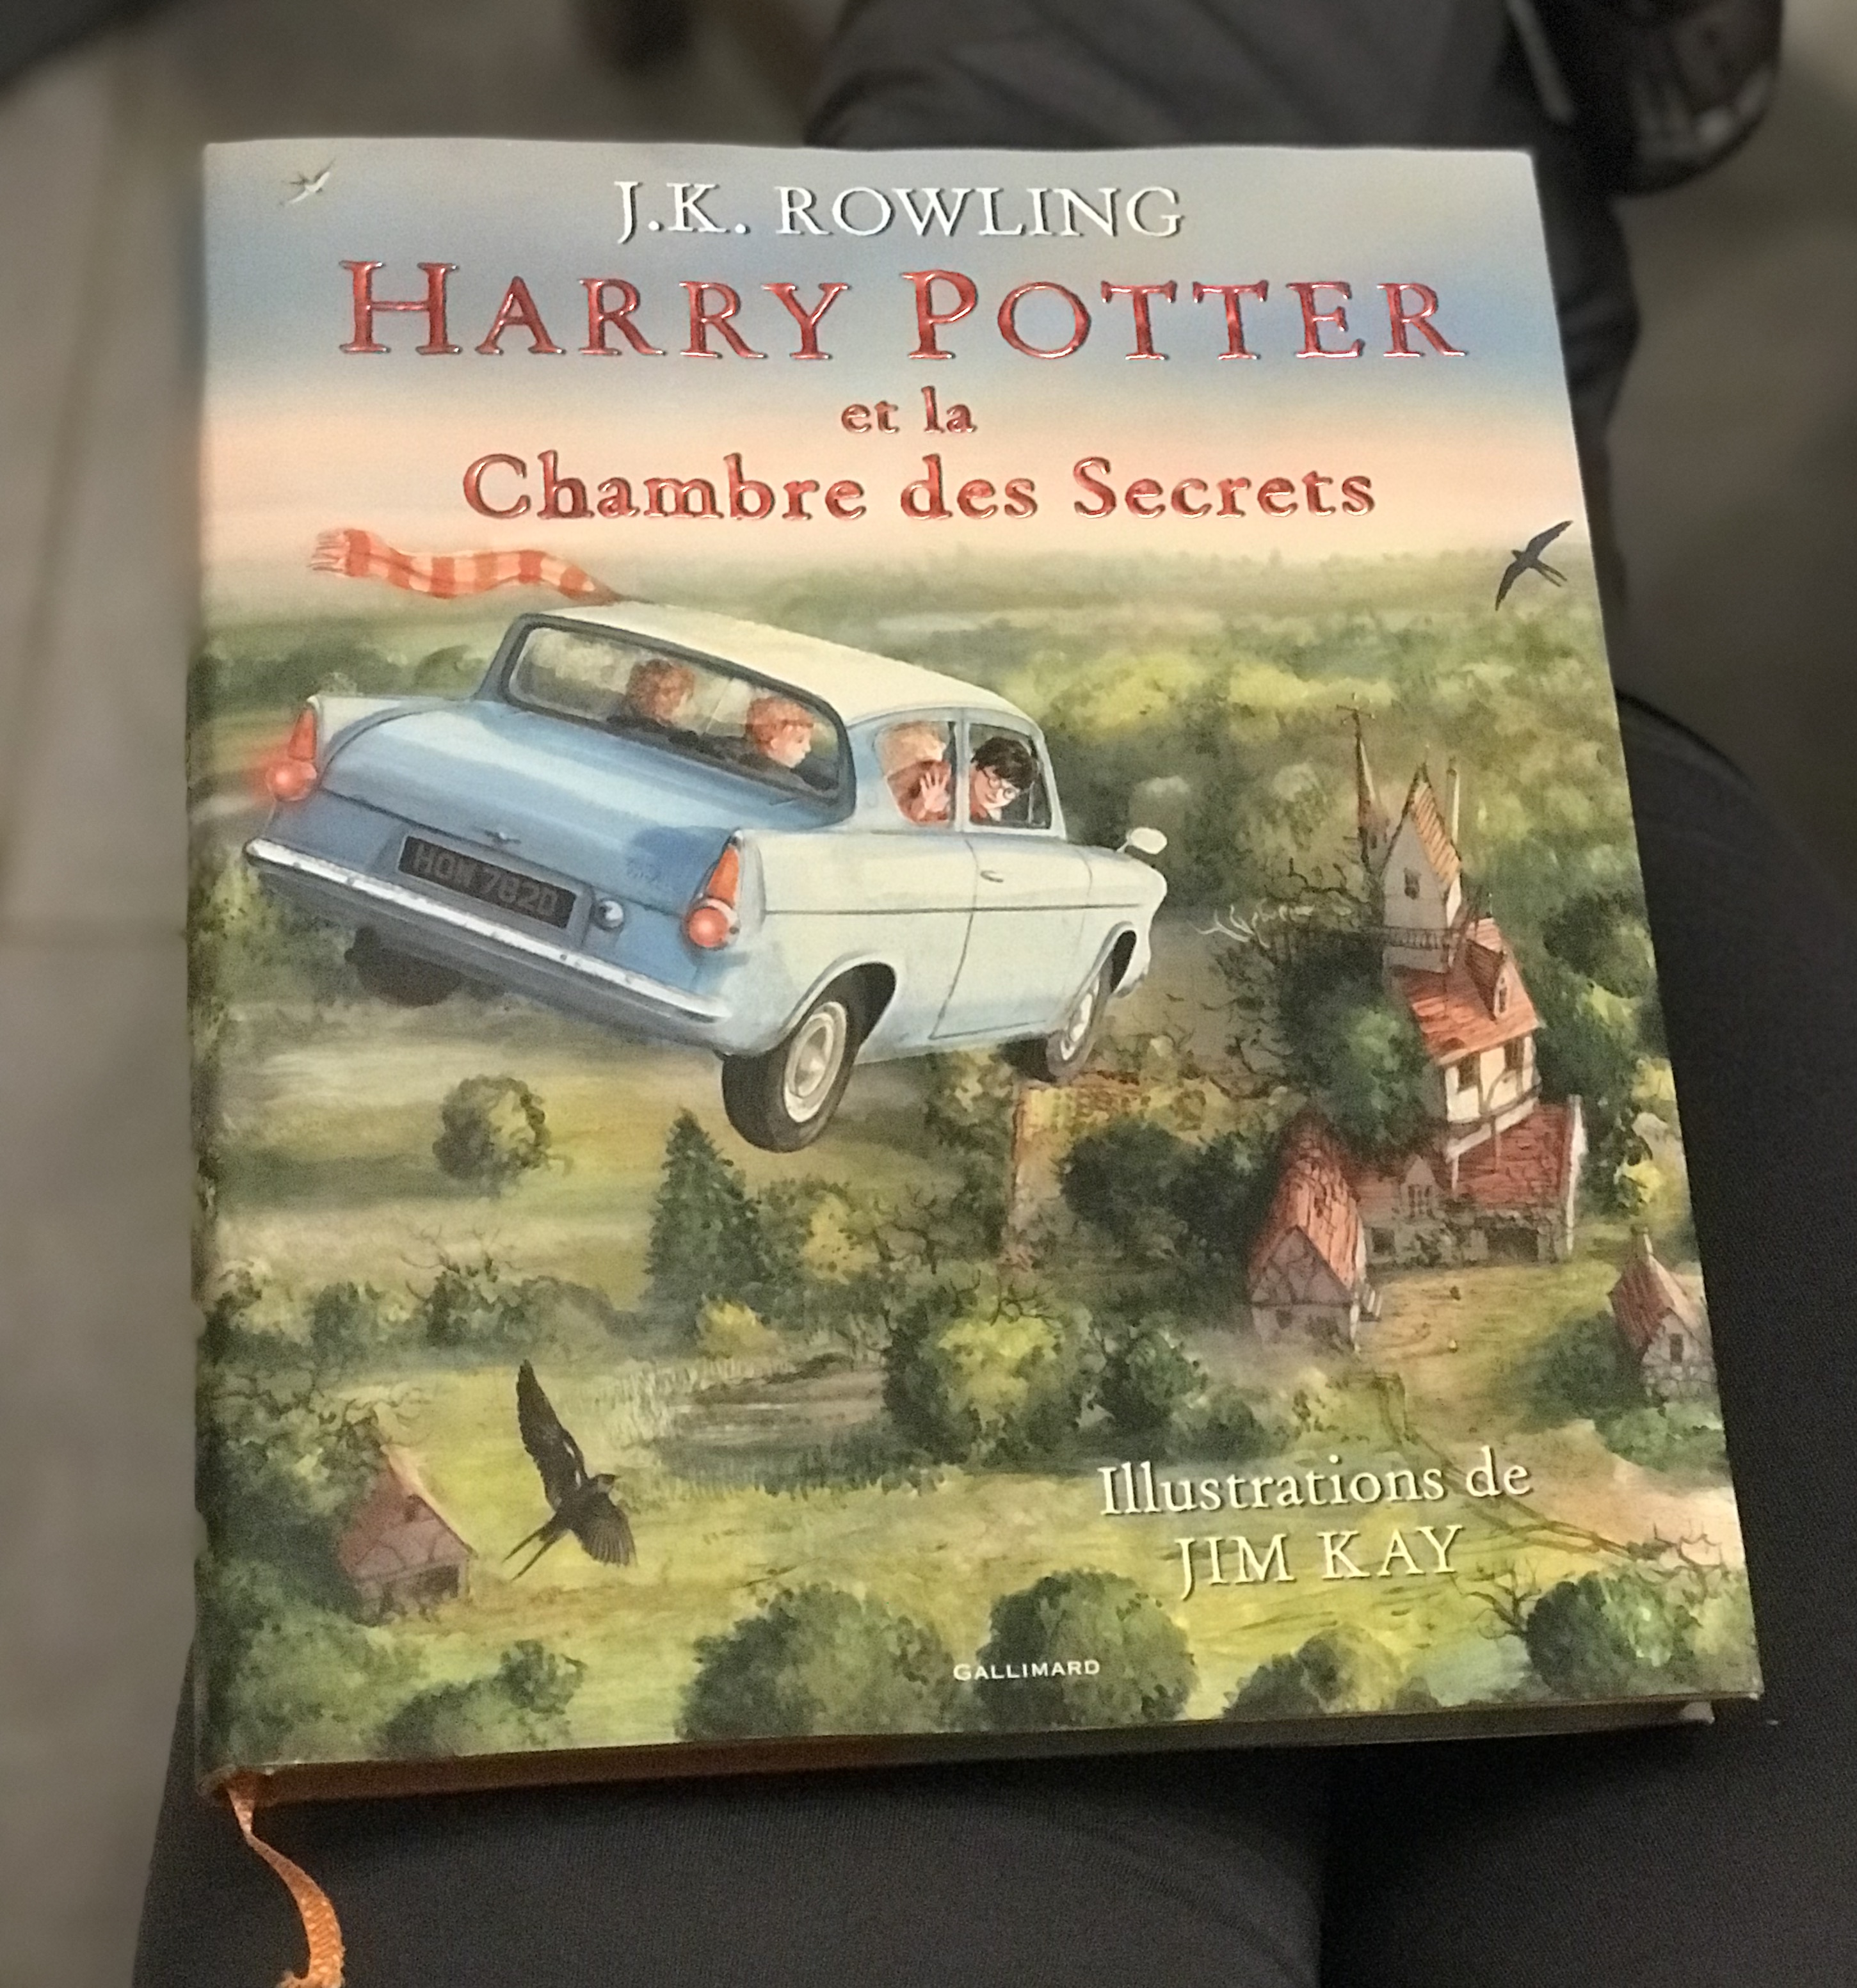 Harry Potter et la chambre des secrets de J.K. Rowling (illustré par Jim Kay) – Un bouquin dans la main